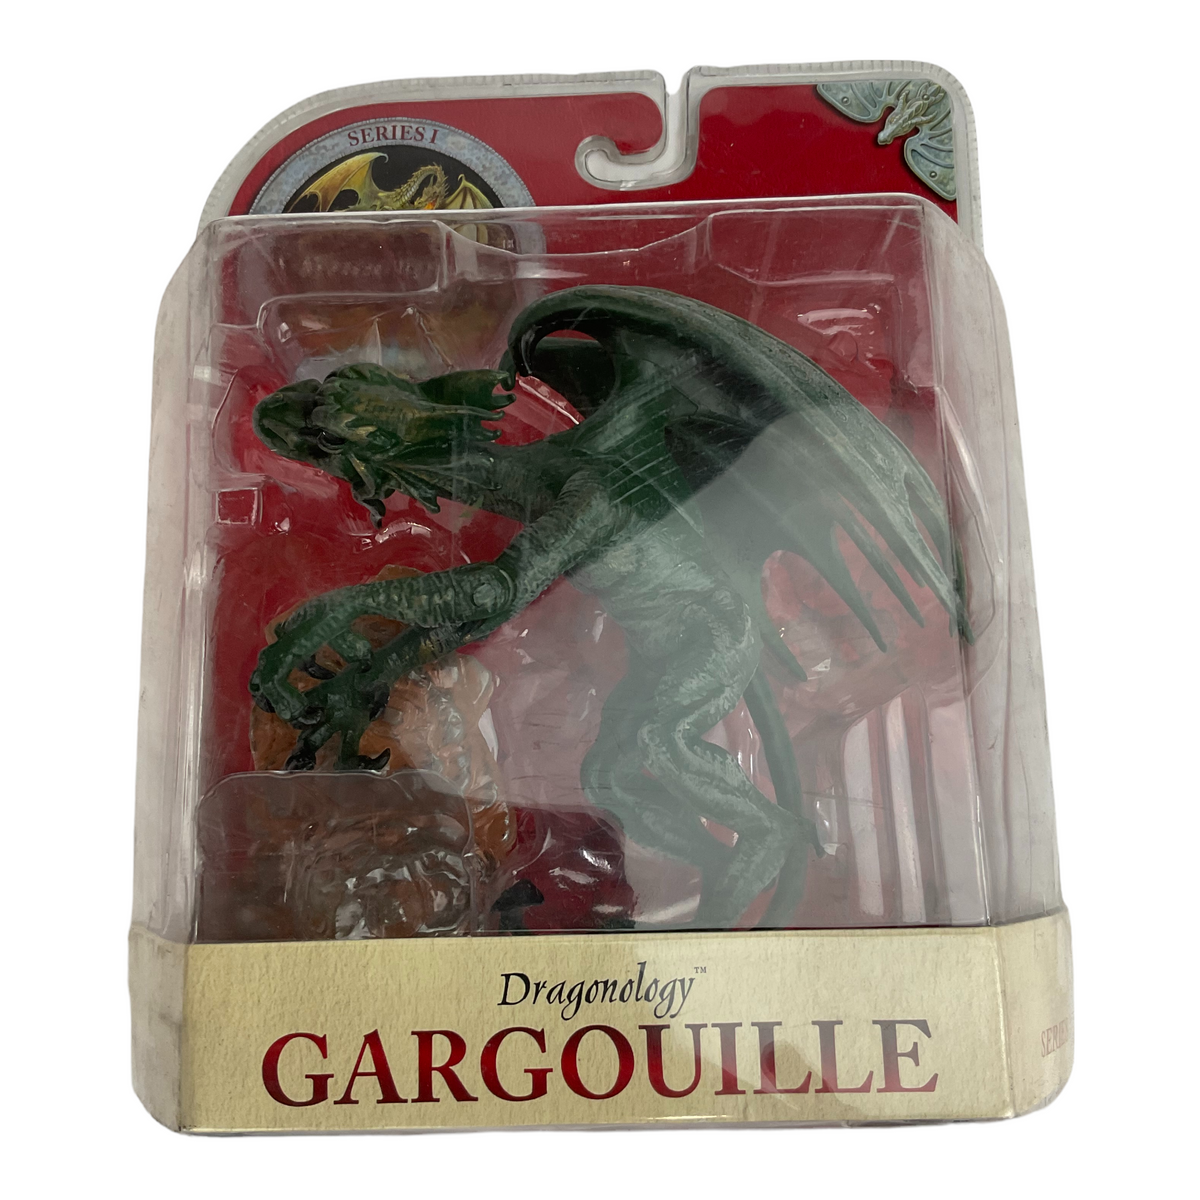 Dragonology Series 1 Action Figures - Gargouille Dragon 2003